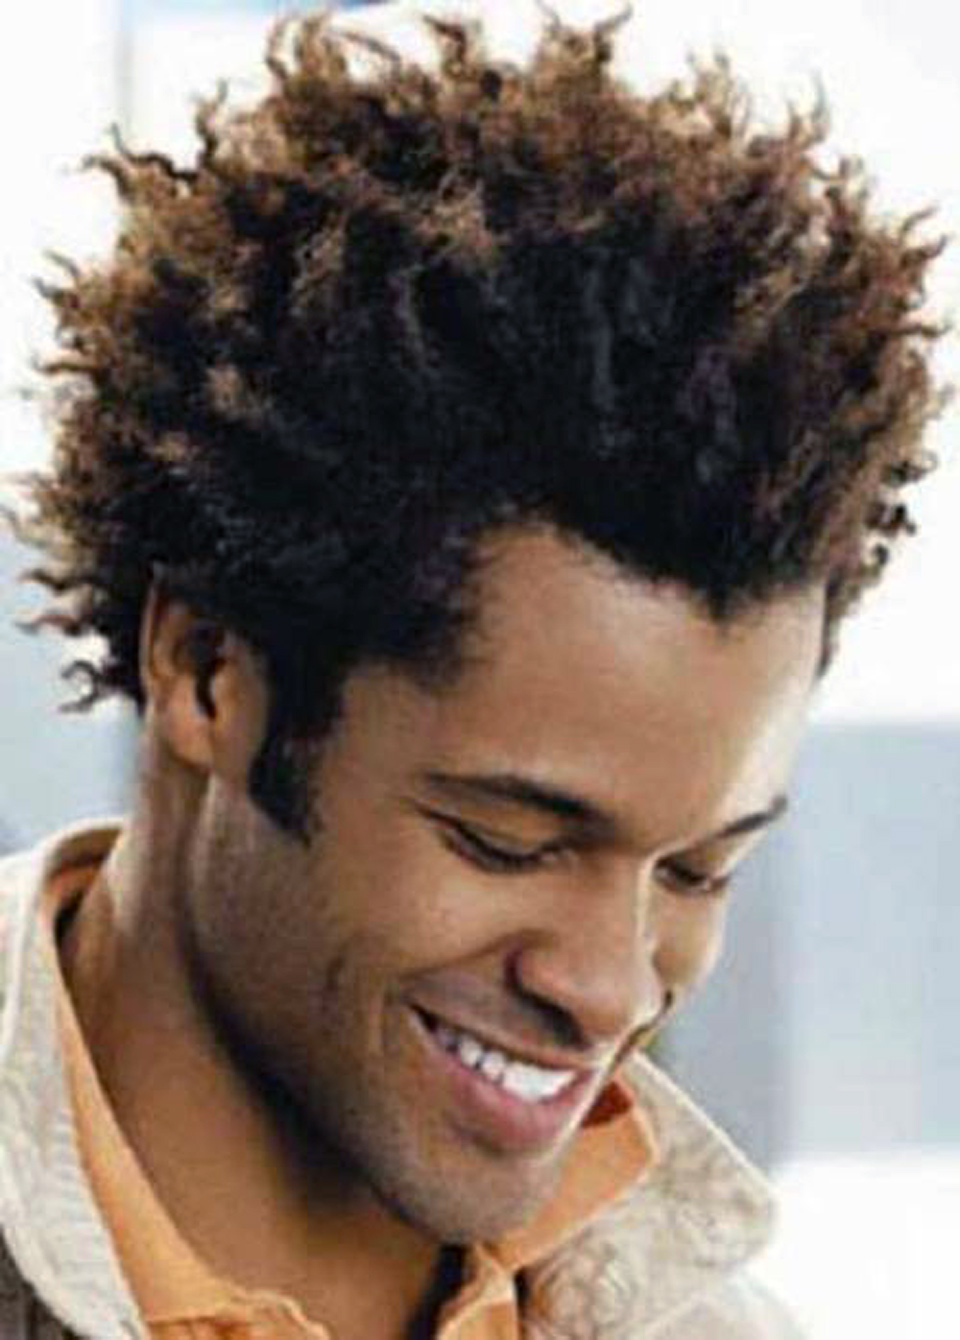 Pompadour hairstyle for black men - Afroculture.net